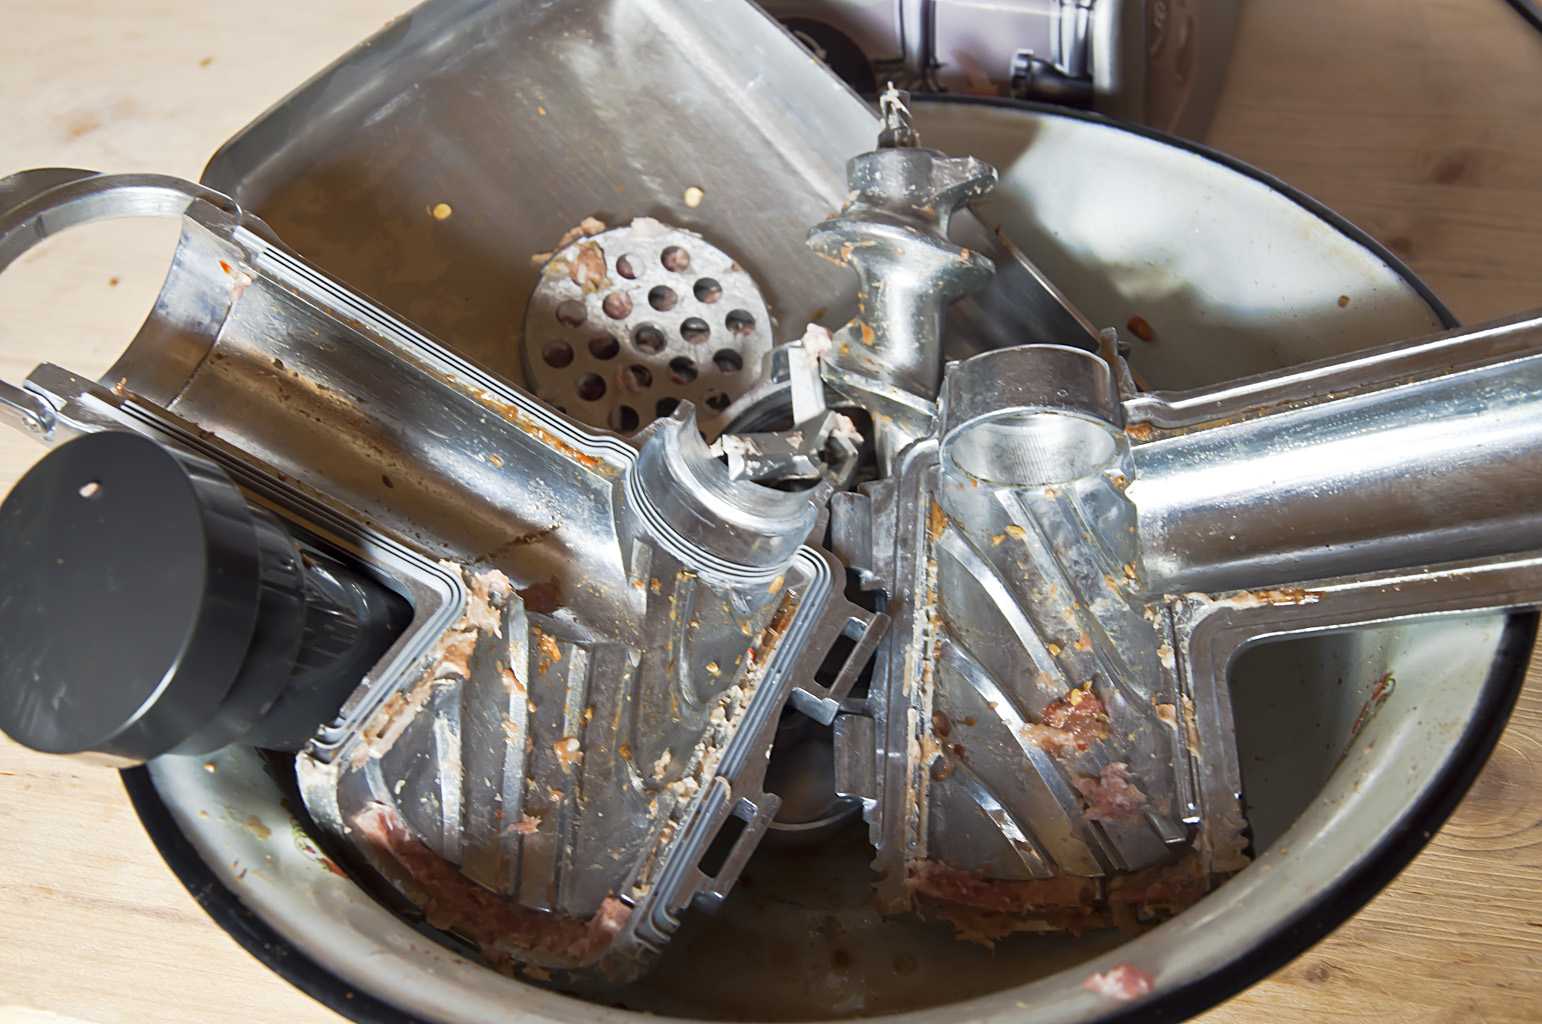 Как отчистить мясорубку после мытья в посудомойке. можно ли мыть мясорубку в посудомоечной машине, как вернуть ей блеск